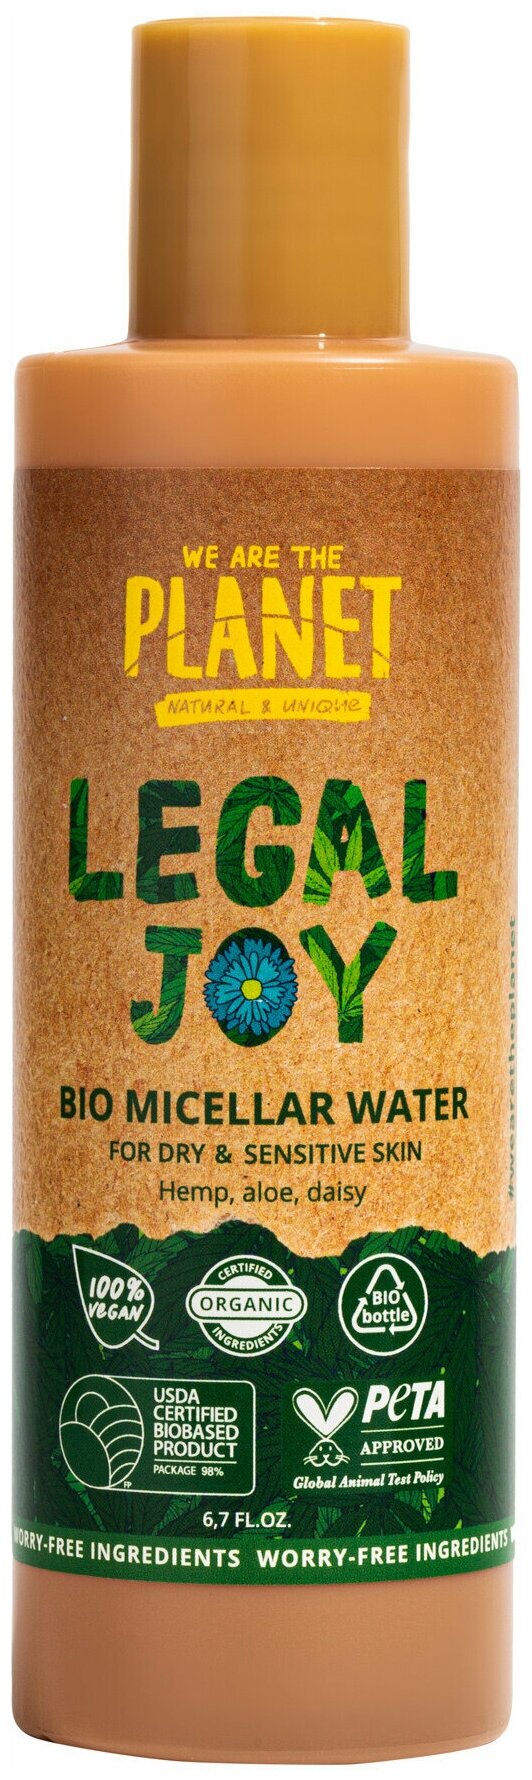 Мицеллярная вода для сухой и чувствительной кожи We Are The Planet Legal Joy 200 мл